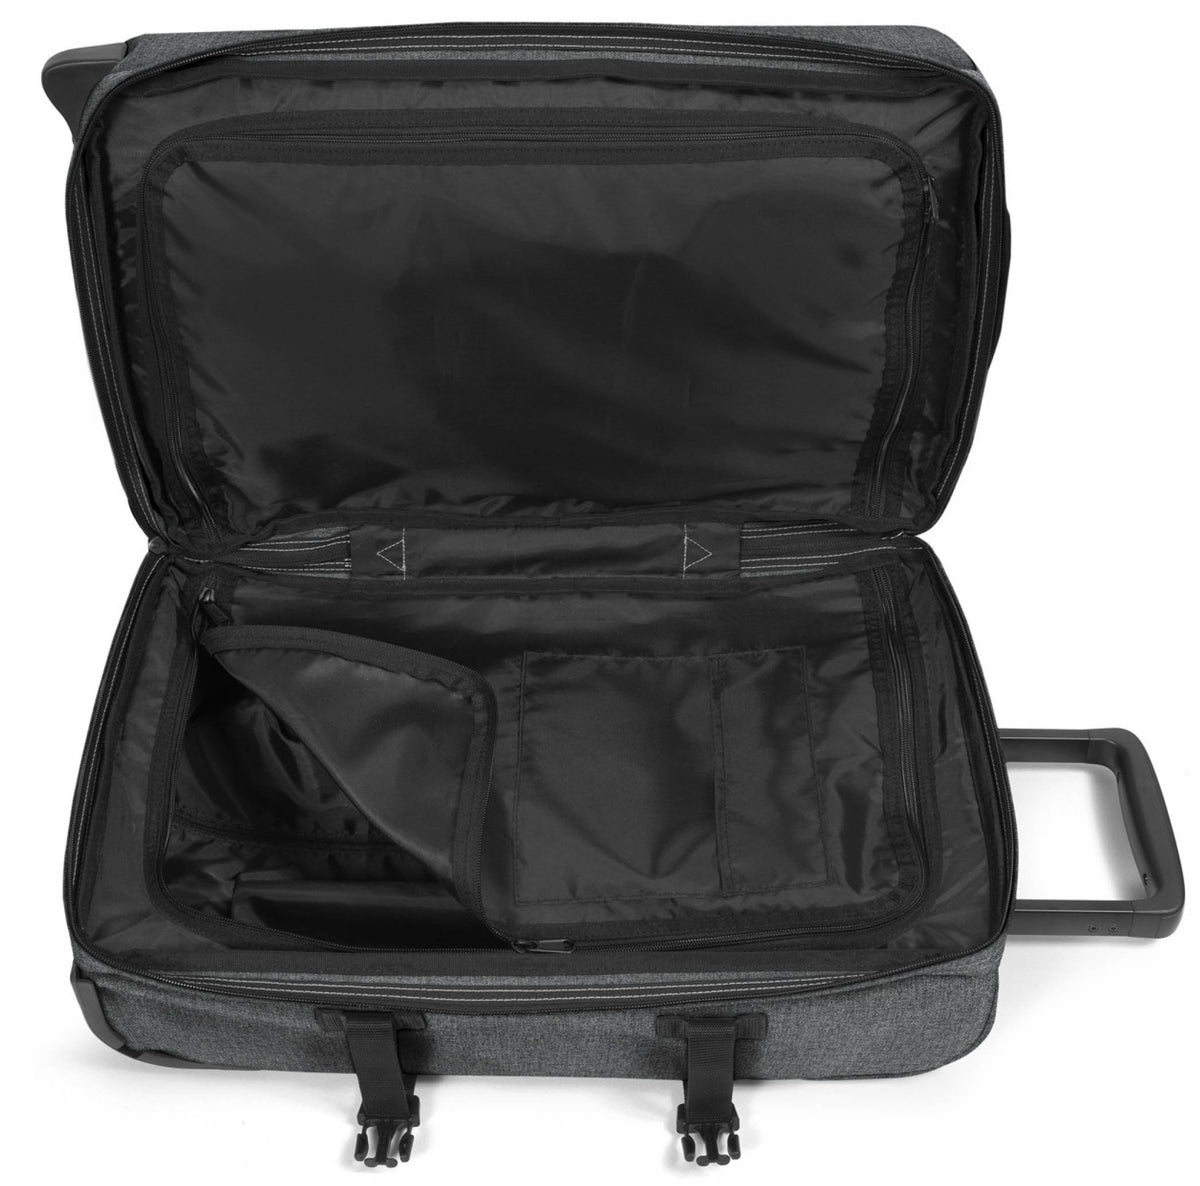 Eastpak Tranverz S Cabin Suitcase - Black Denim